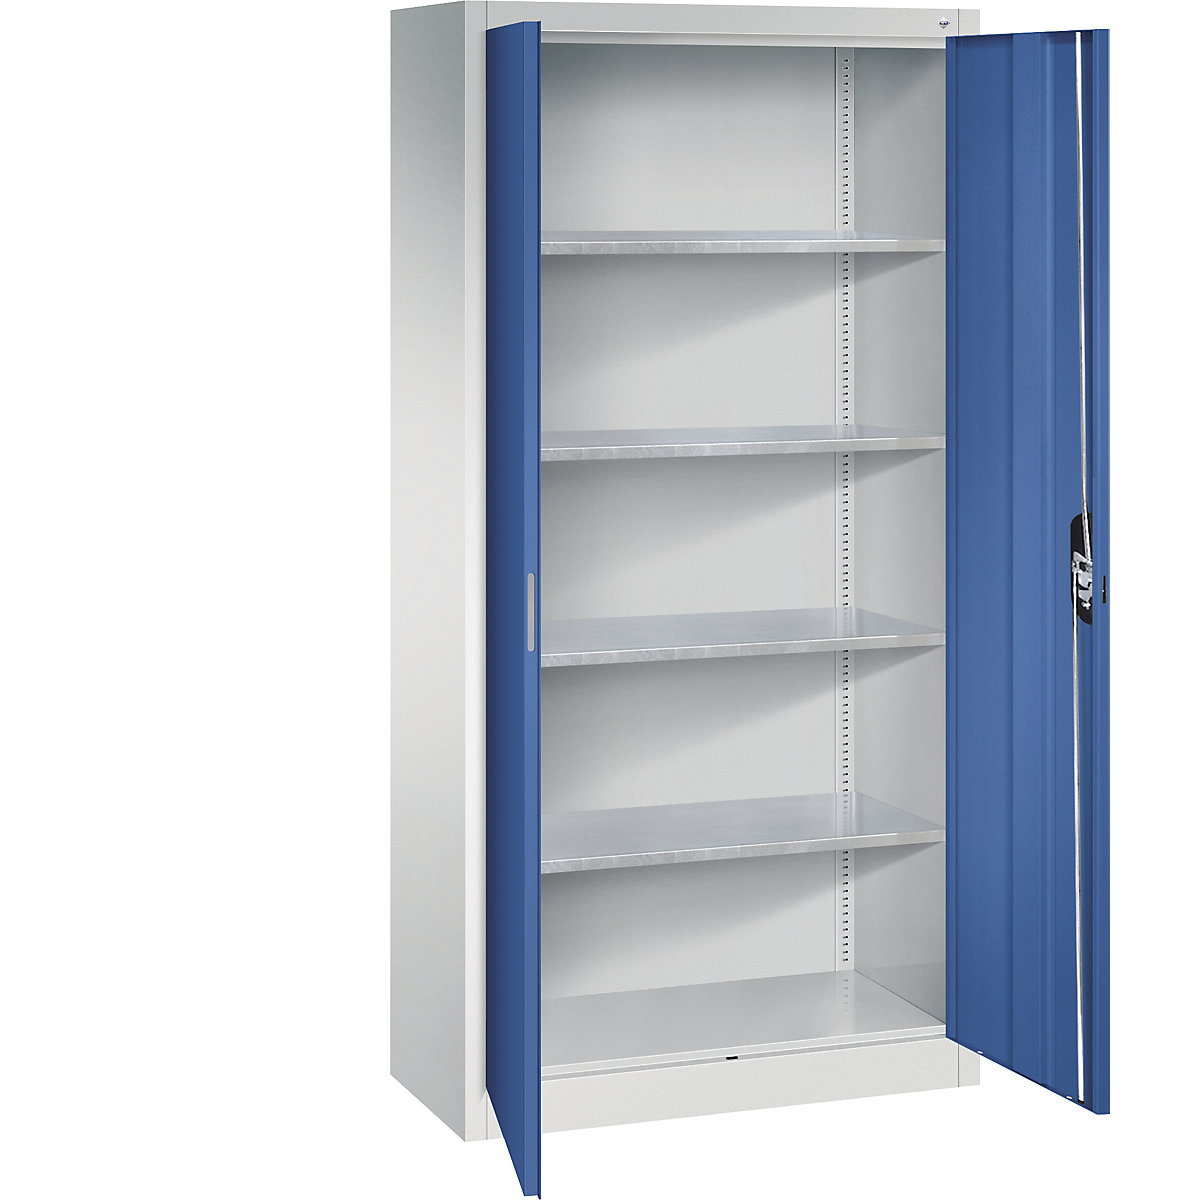 Dílenská skříň s otočnými dveřmi – C+P, v x š x h 1950 x 930 x 400 mm, světlá šedá / enciánová modrá-12